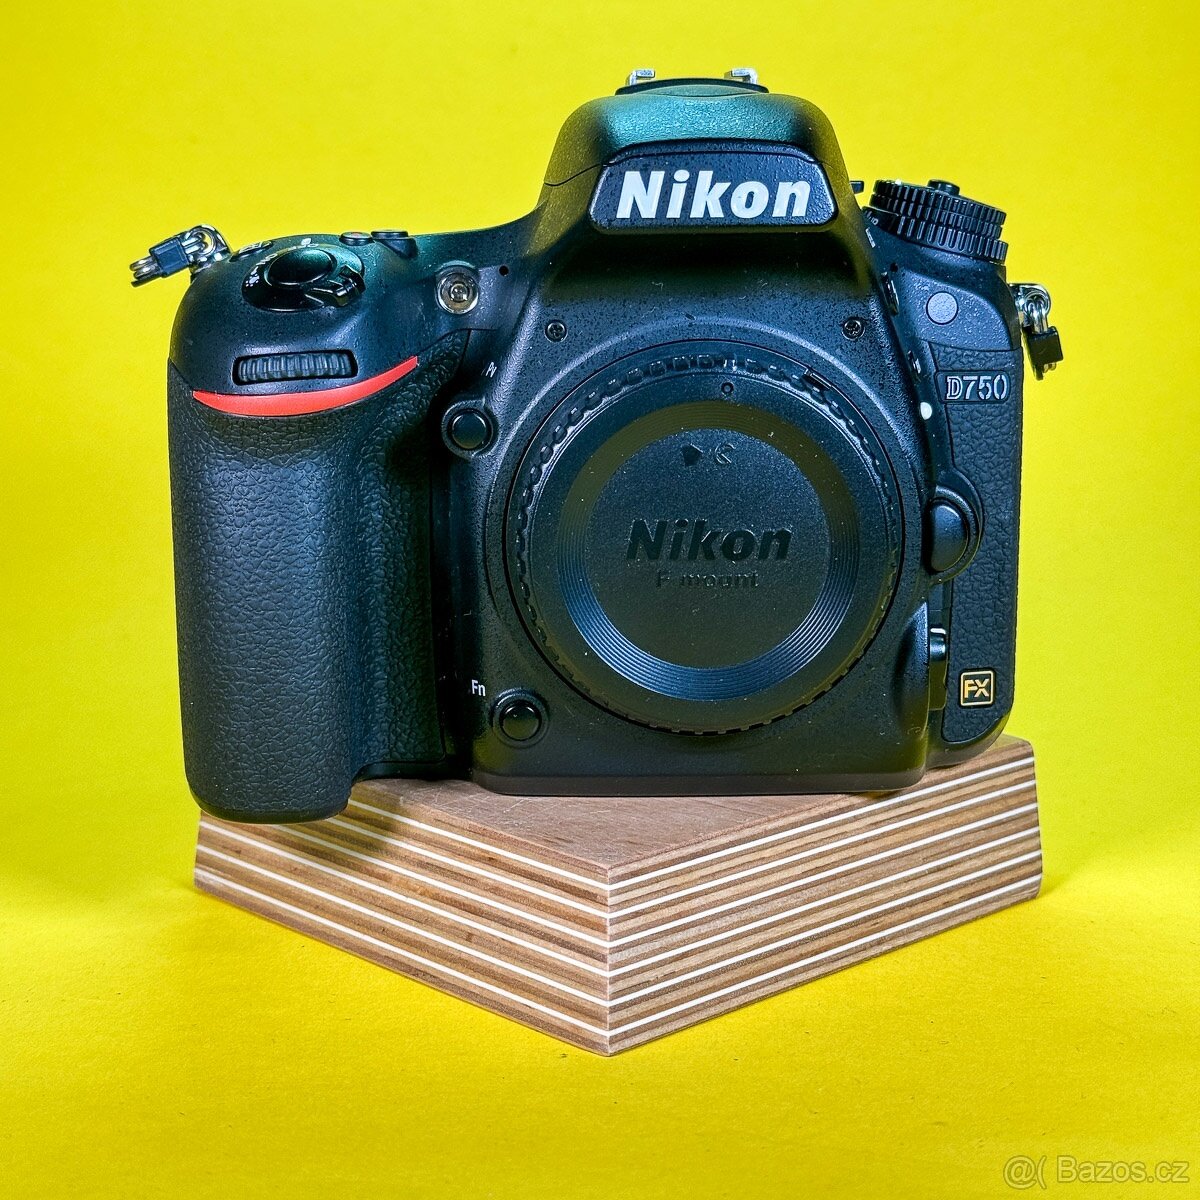 Nikon D750 | 6158362